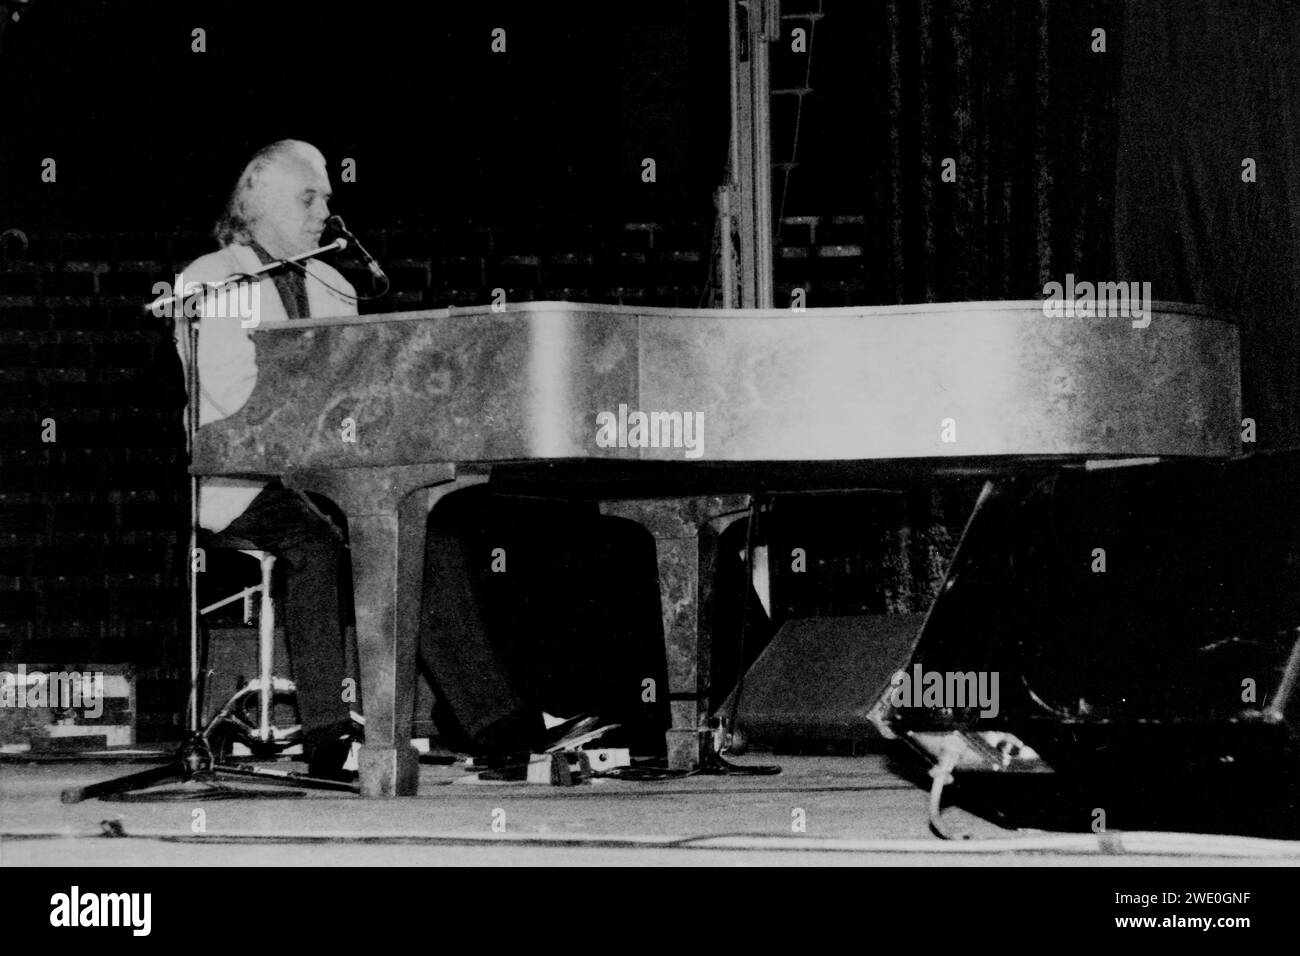 Procol Harum, Gary Brooker, Procol Harum - gruppo rock britannico che suona rock psichedelico e progressivo con note di blues, R&B e soul, fondato nel 1967 a Southend-on-Sea, musica, foto Kazimierz Jurewicz, Foto Stock